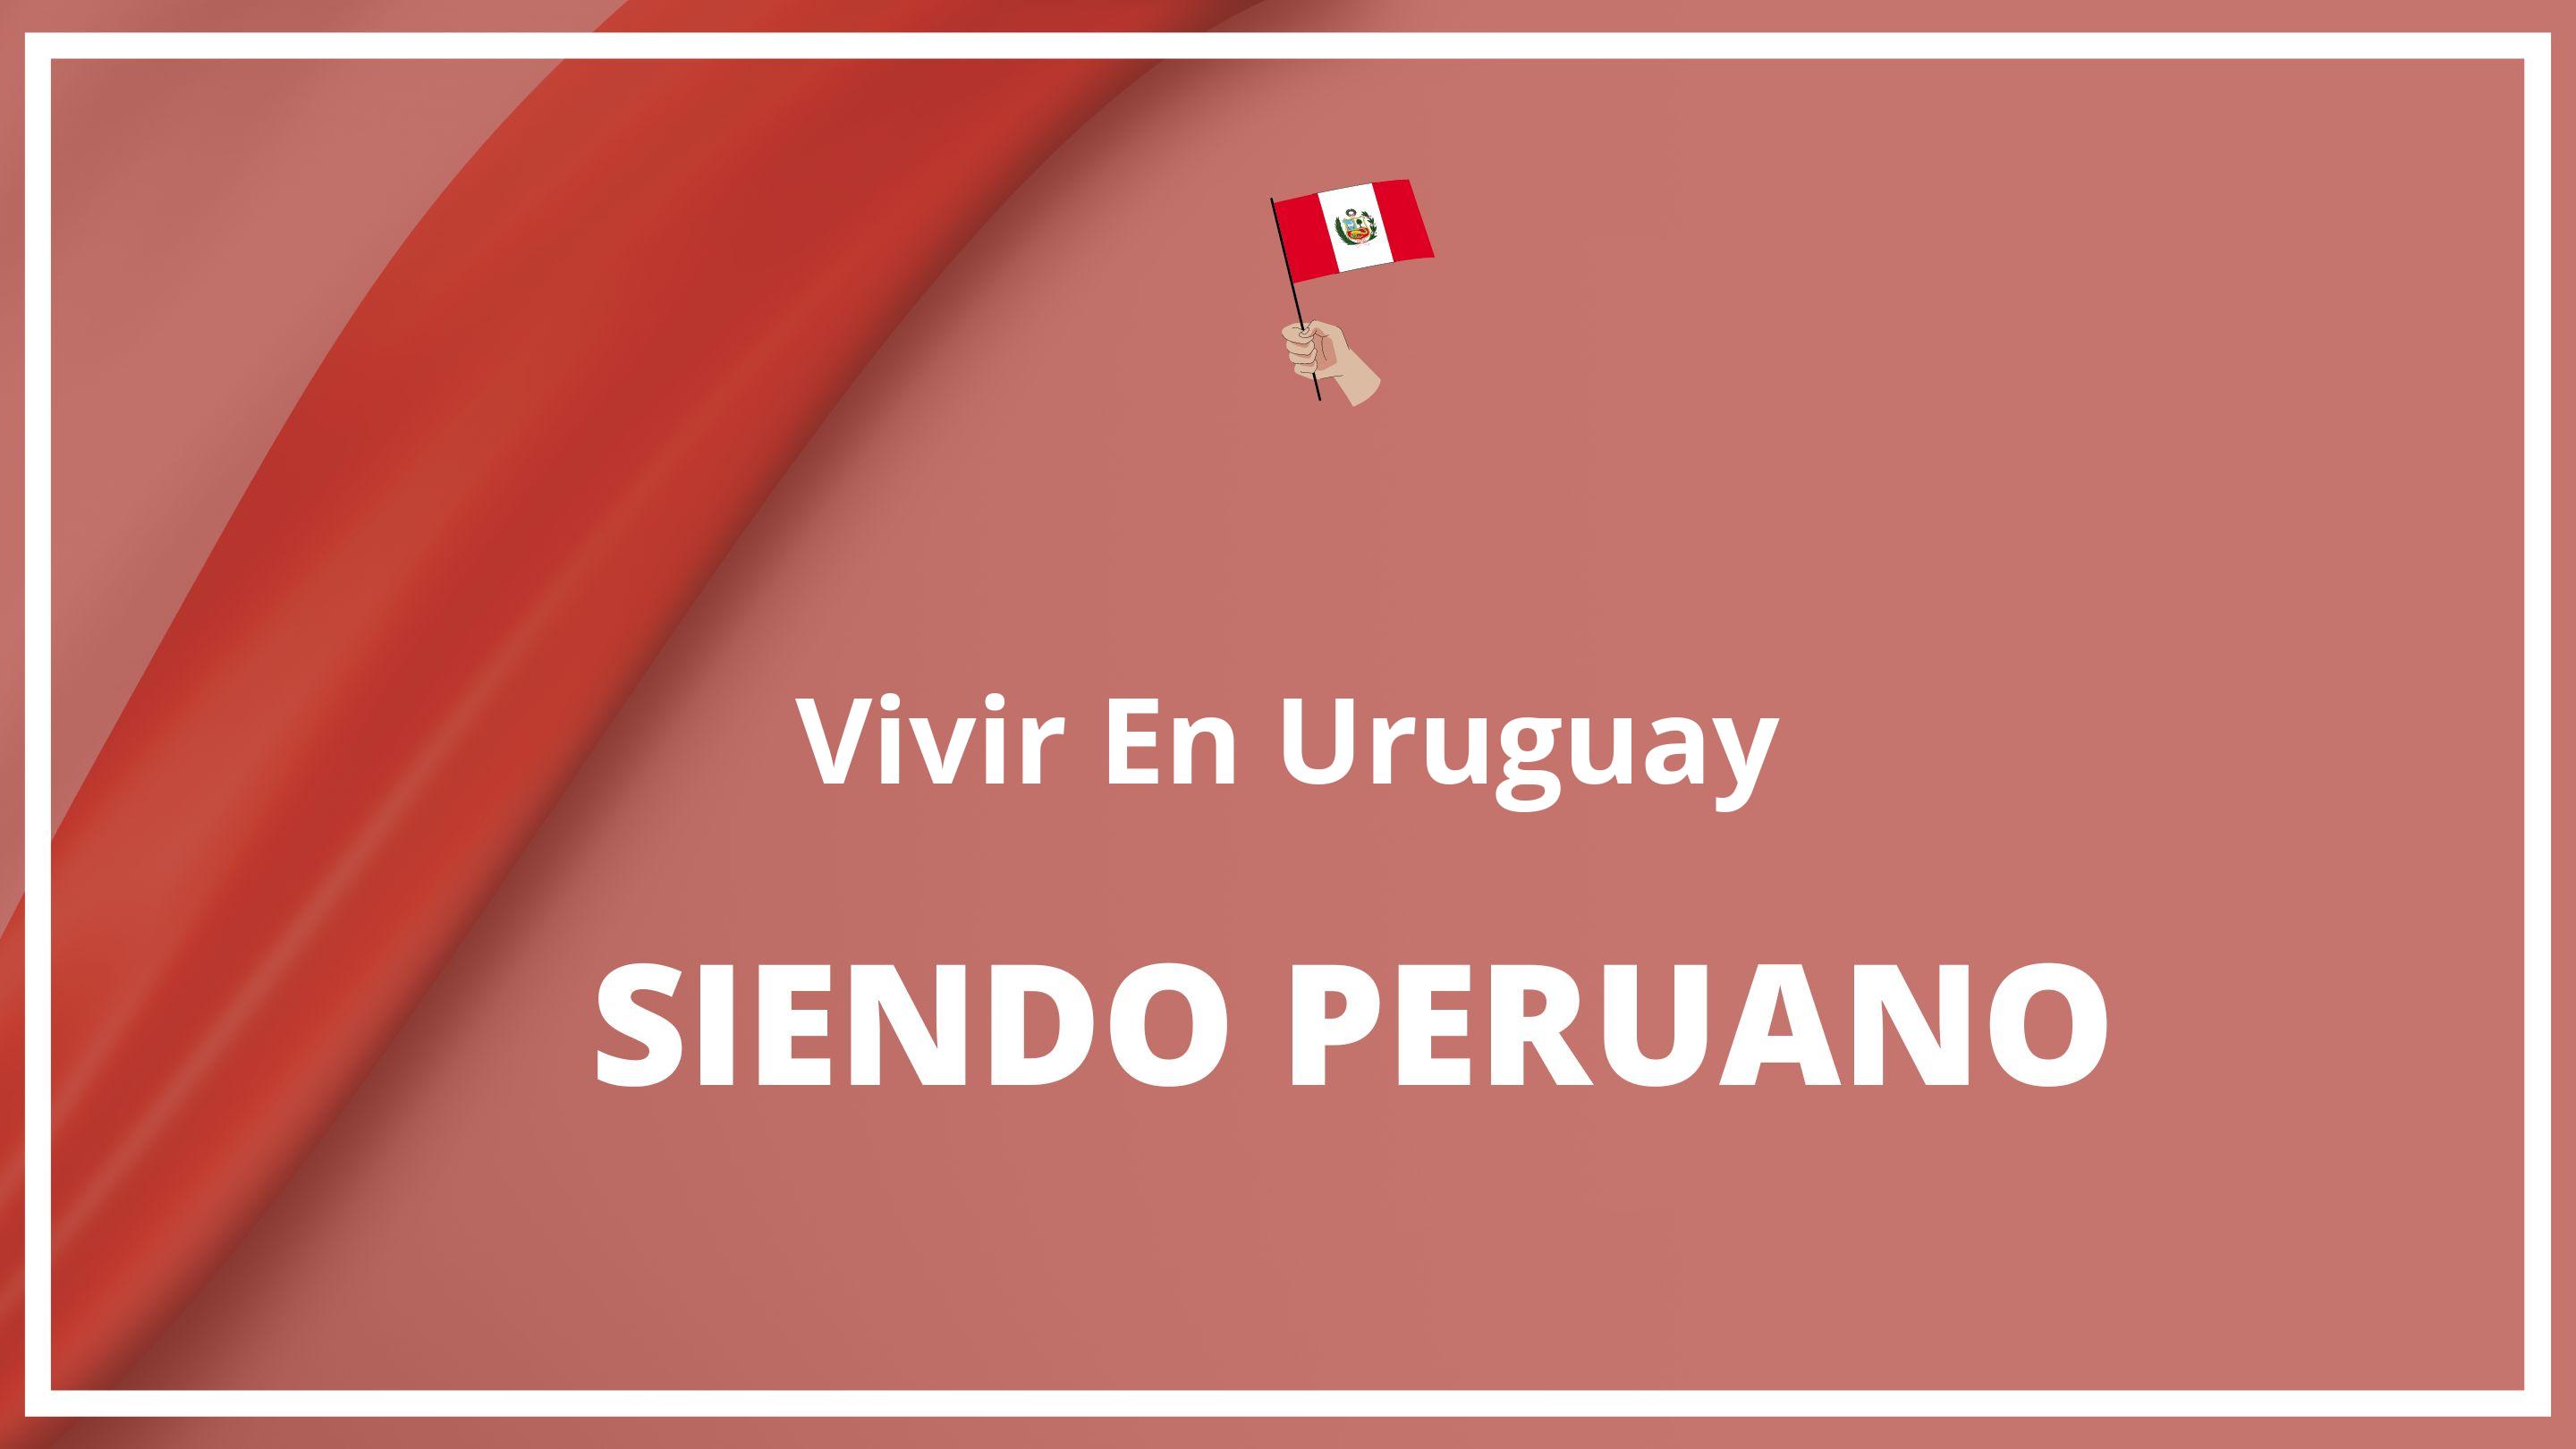 Como vivir en uruguay siendo peruano